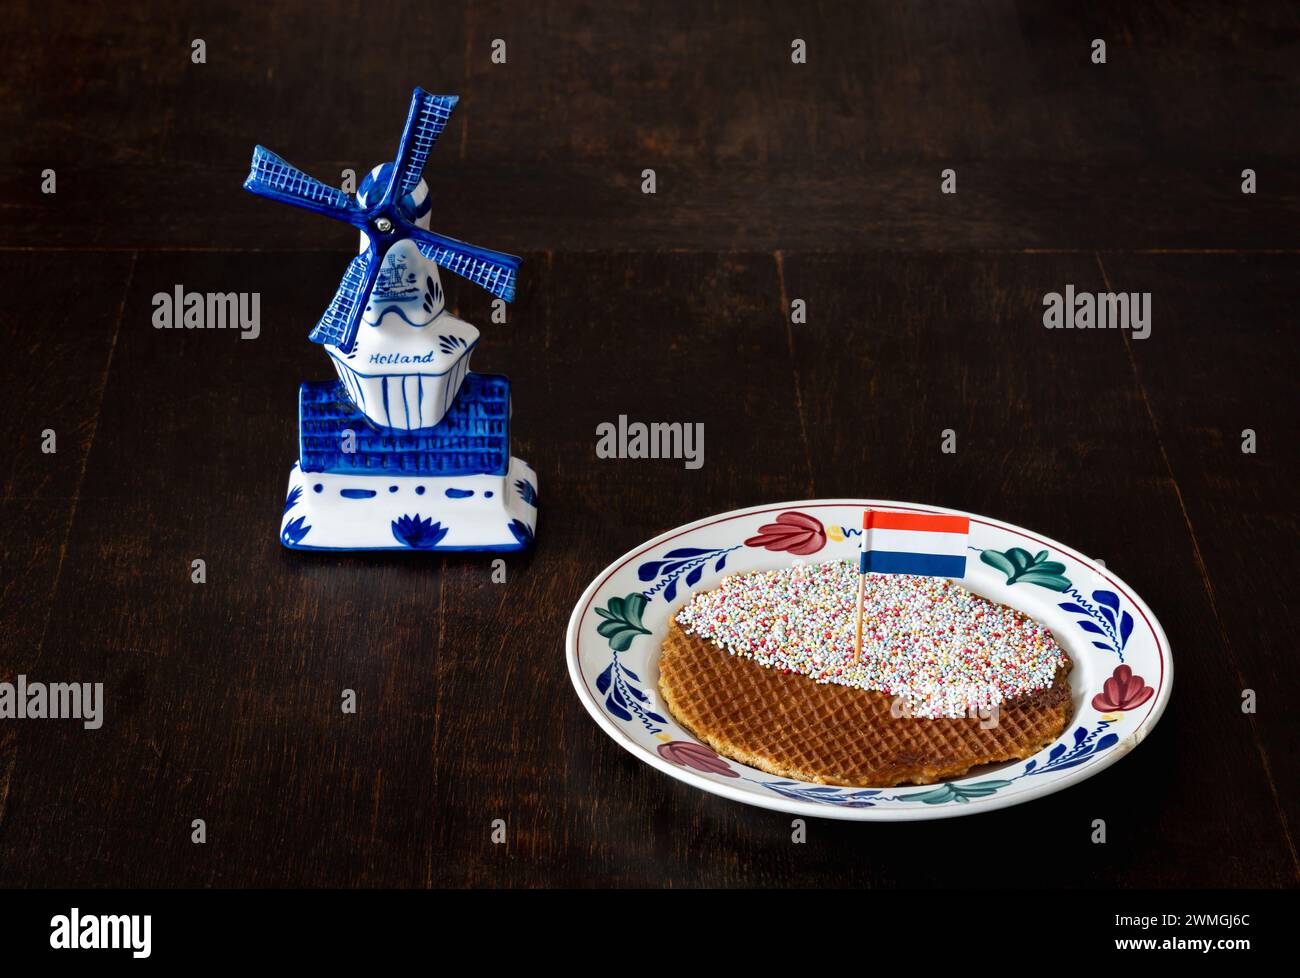 Un stroopwafel avec des pépites et un drapeau néerlandais sur l'assiette, un biscuit gaufré rond, qui est un régal populaire aux pays-Bas Banque D'Images